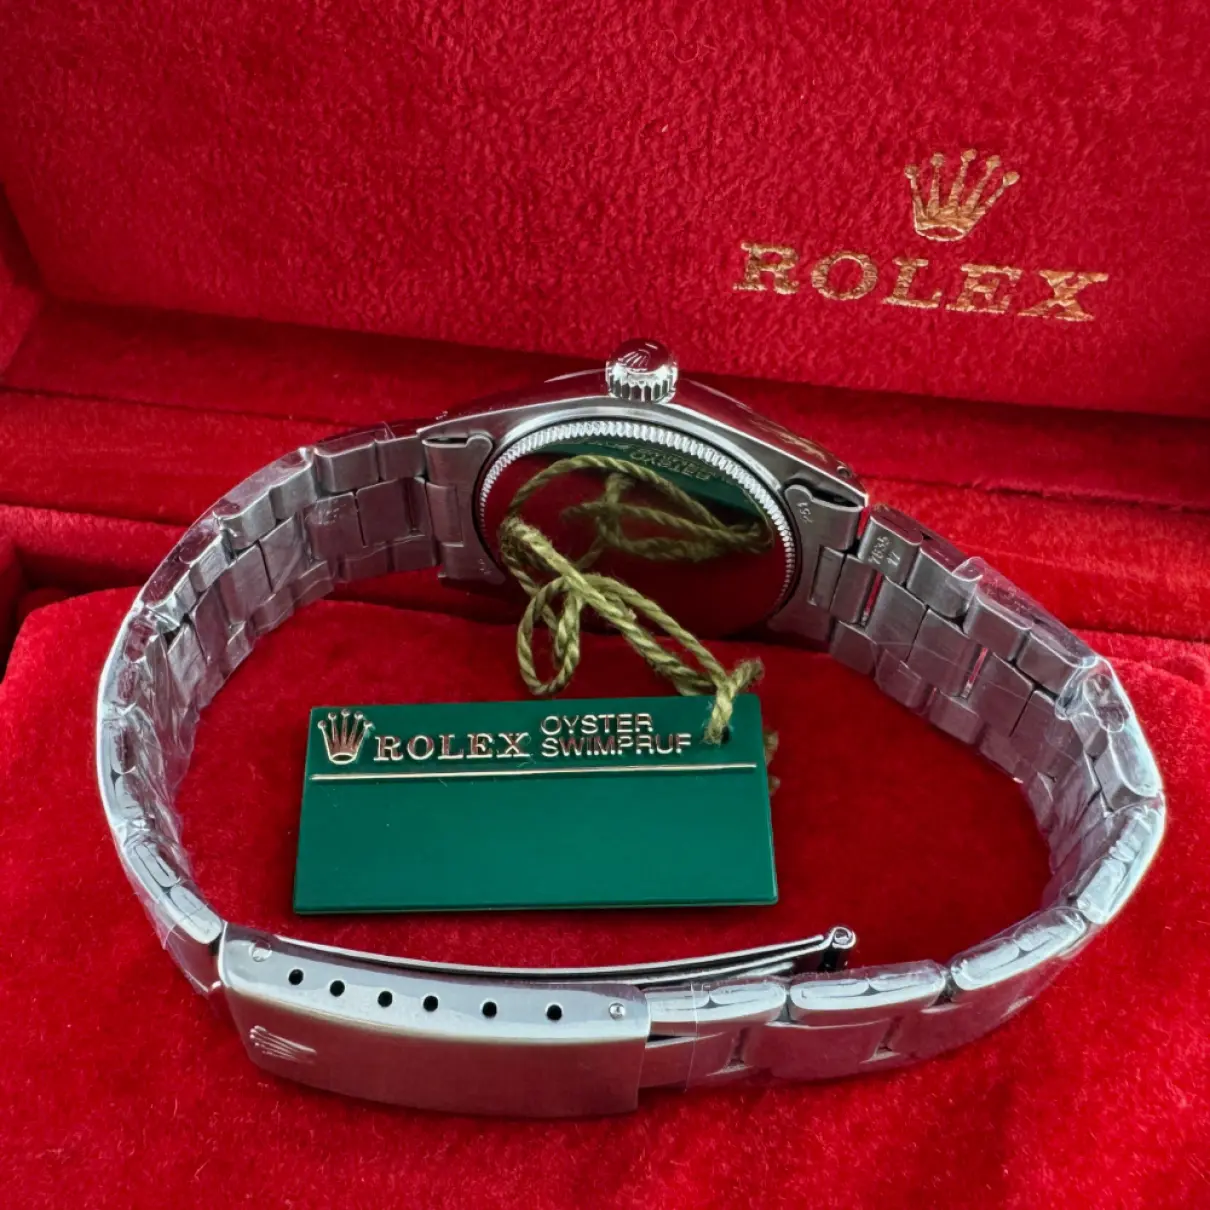 Oysterdate watch Rolex - Vintage